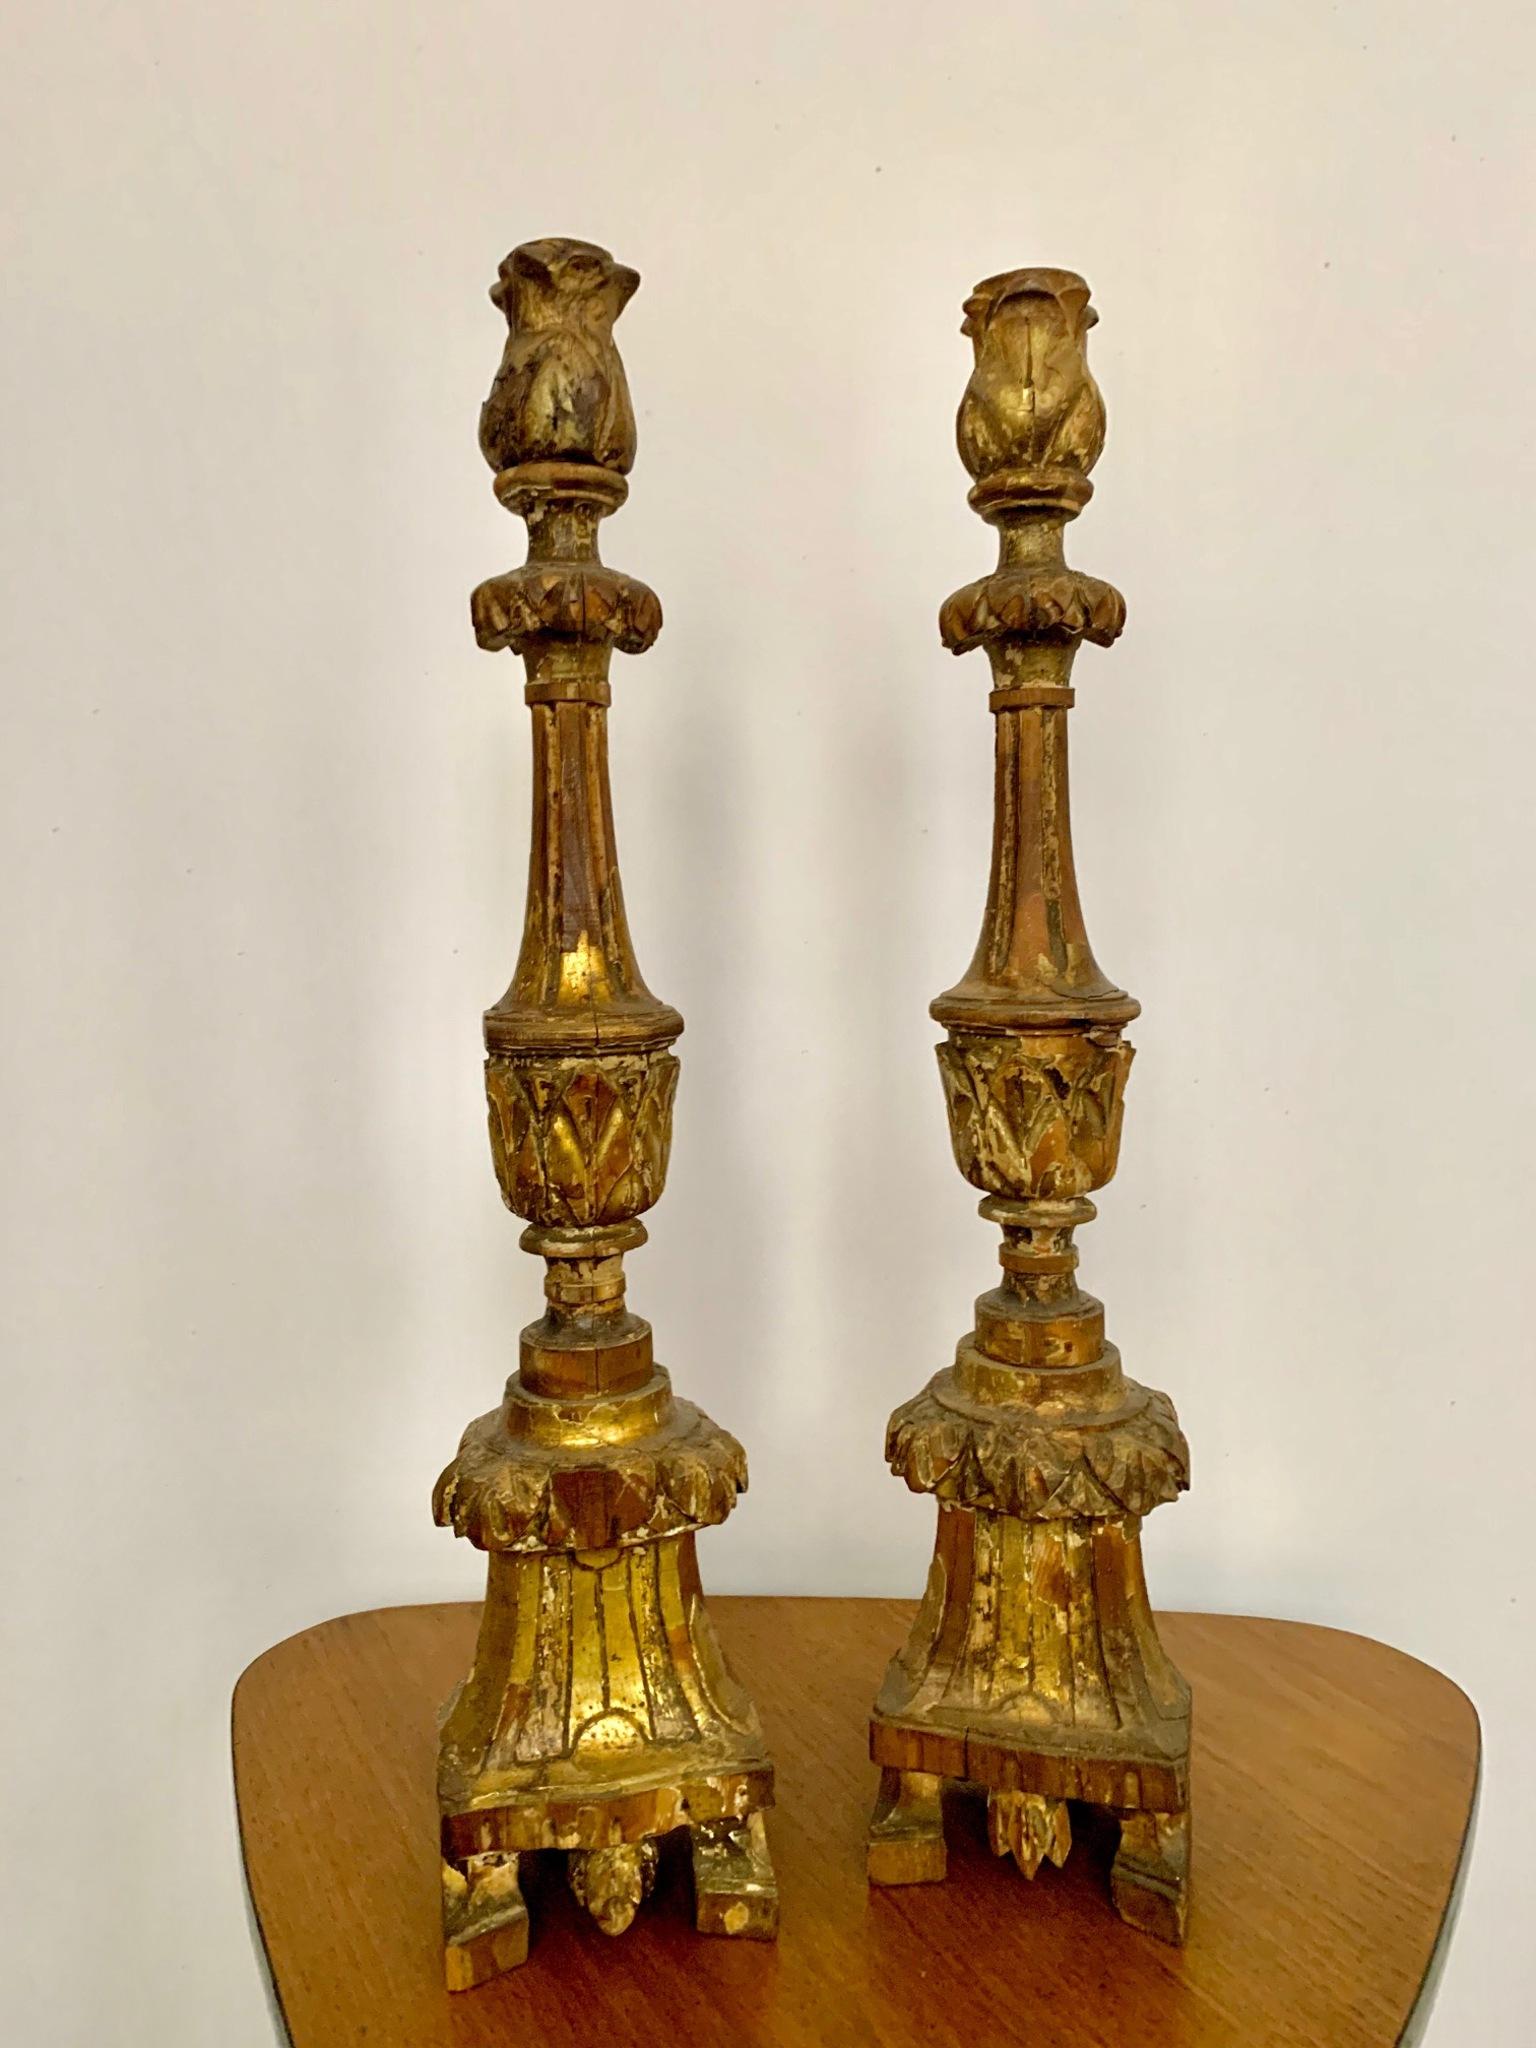 Paar Fackeln aus vergoldetem und geschnitztem Holz, datiert aus der Mitte des 18. Jahrhunderts in Portugiesisch, die Basis ist eine dreieckige Form, die auf drei kleinen Füßen ruht.
hat seine ursprüngliche Patina behalten.